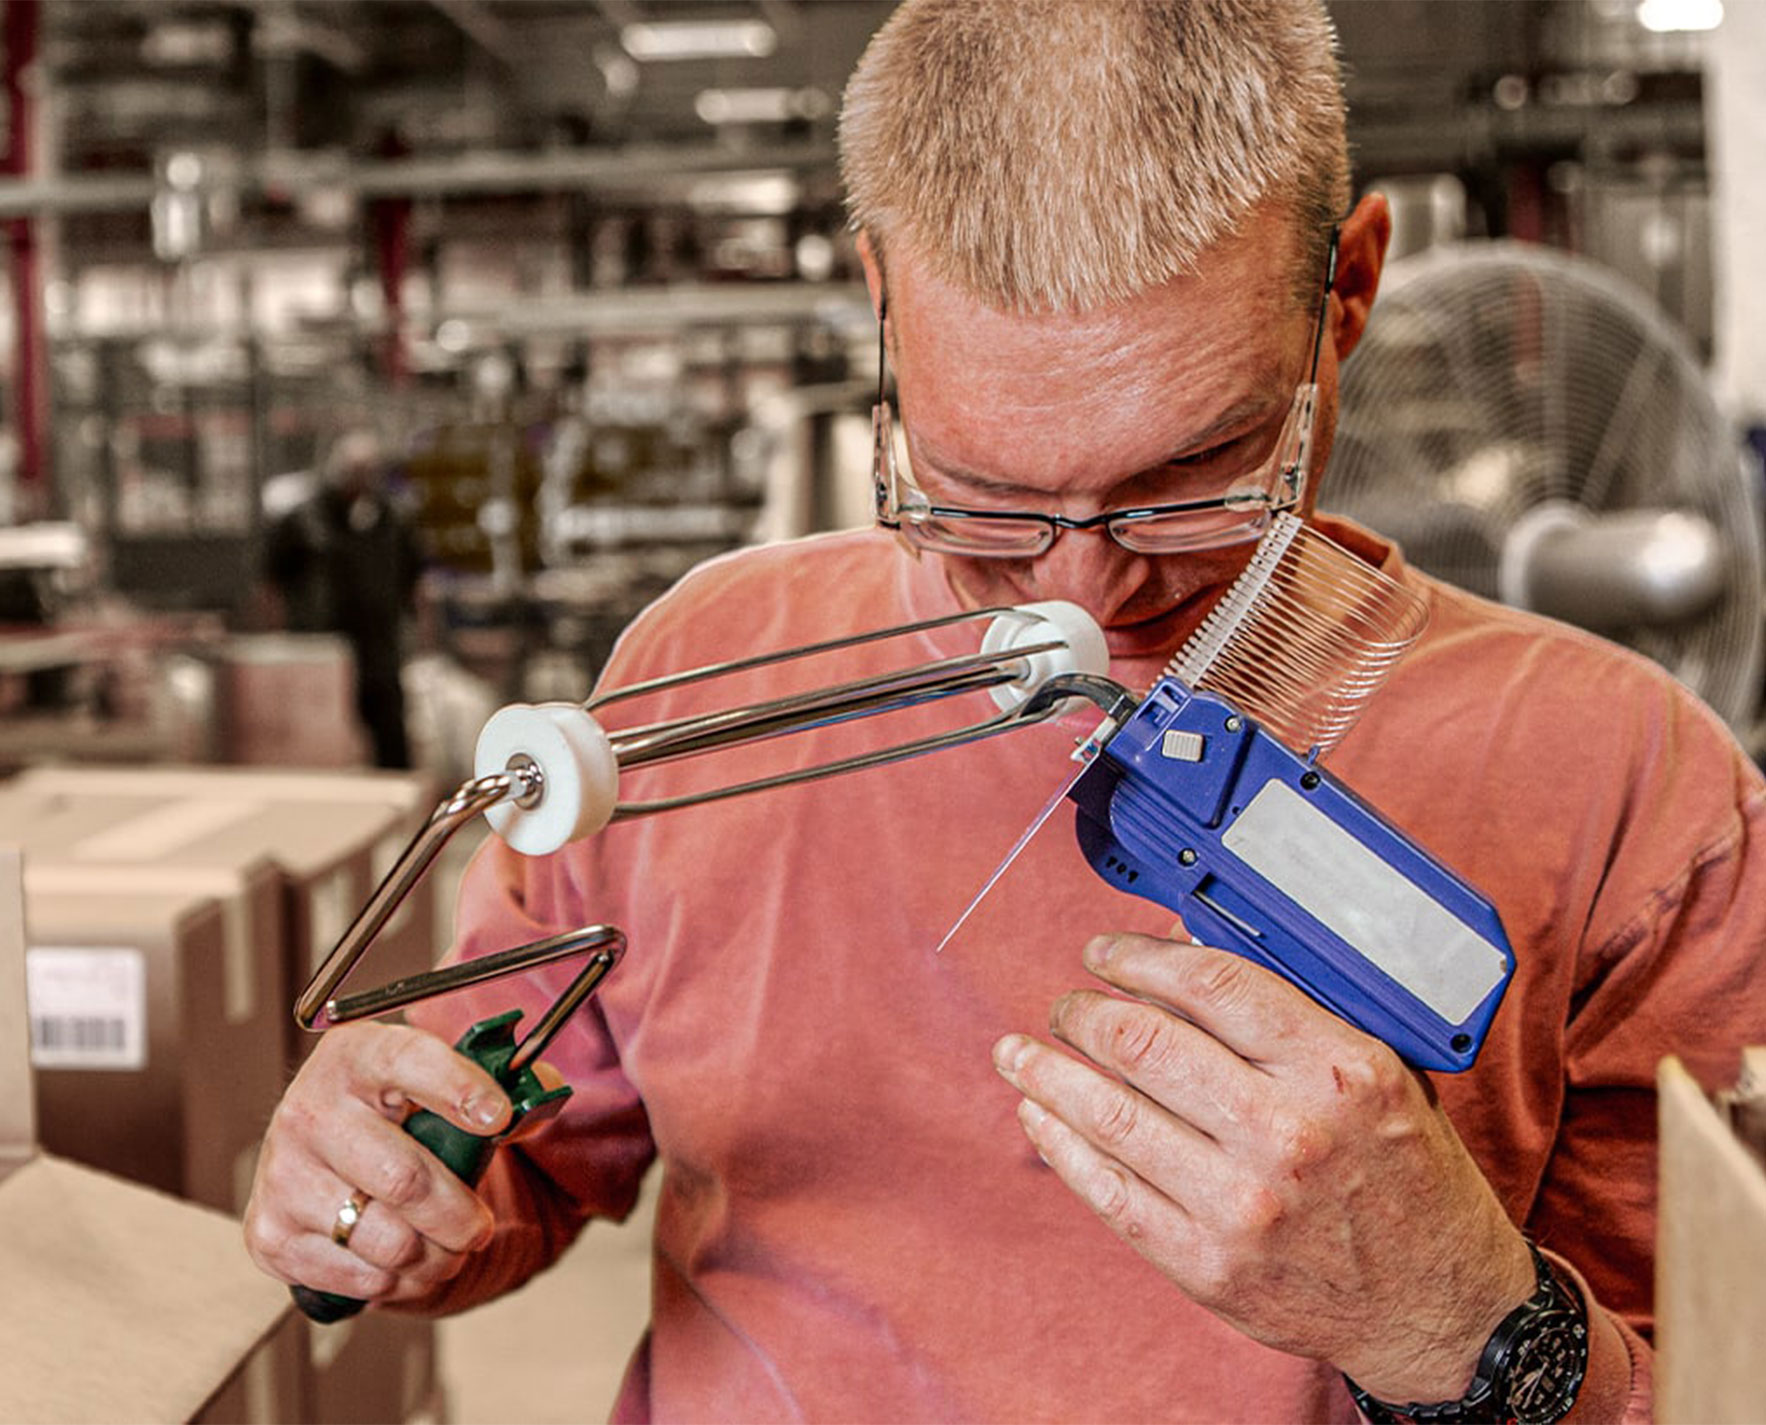 man assembling a paint roller